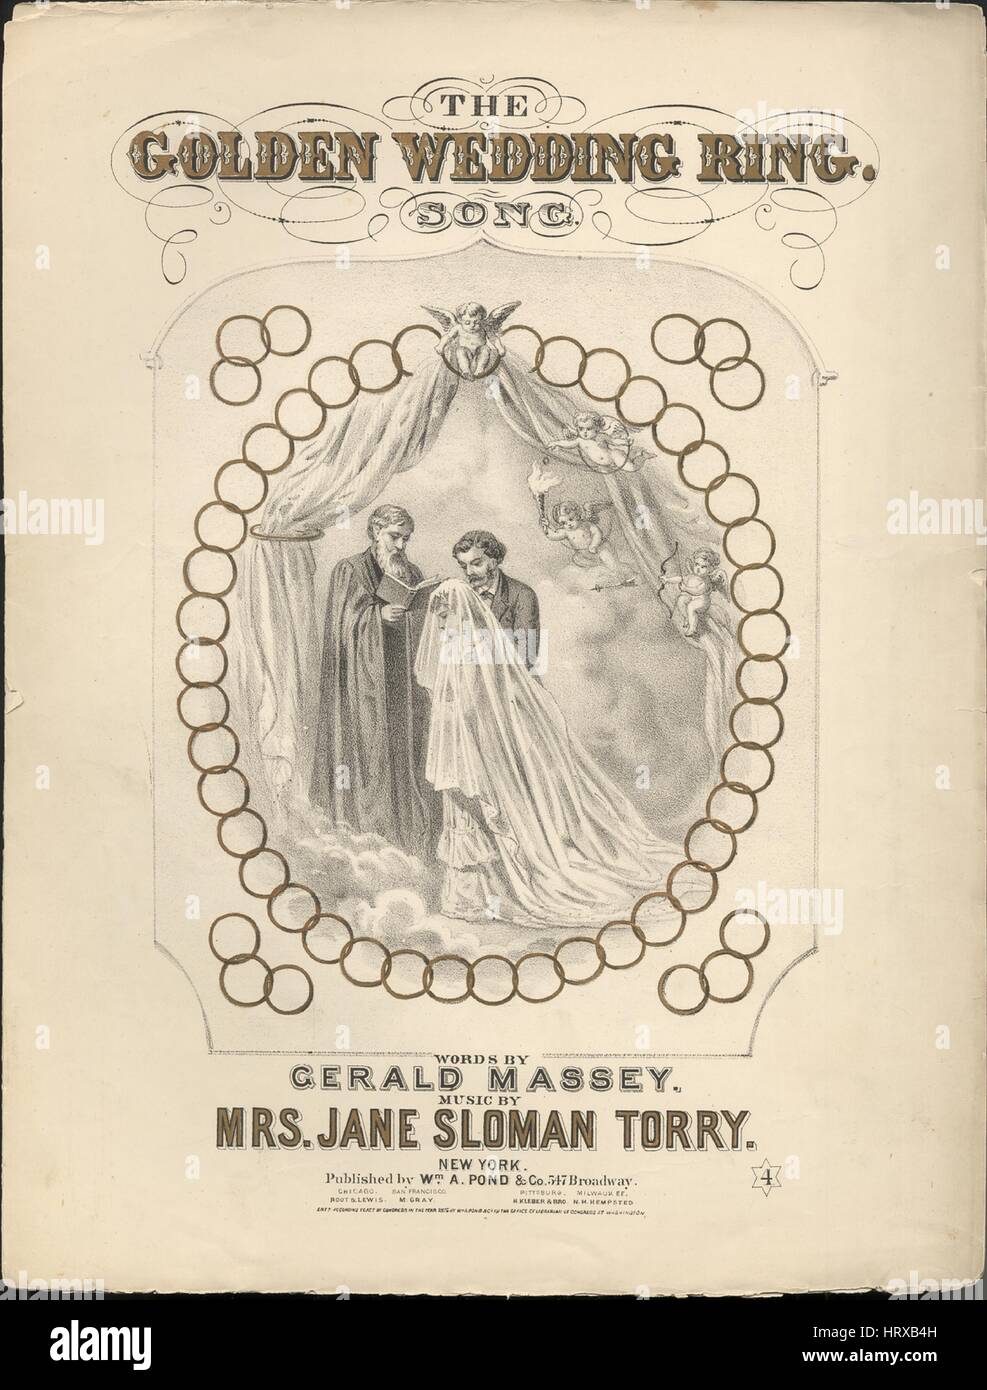 Imagen de cubierta de partituras de la canción "El Anillo de Bodas de Oro',  con la canción de la autoría original notas leyendo 'palabras por Gerald  Massey Música por la Sra. Jane